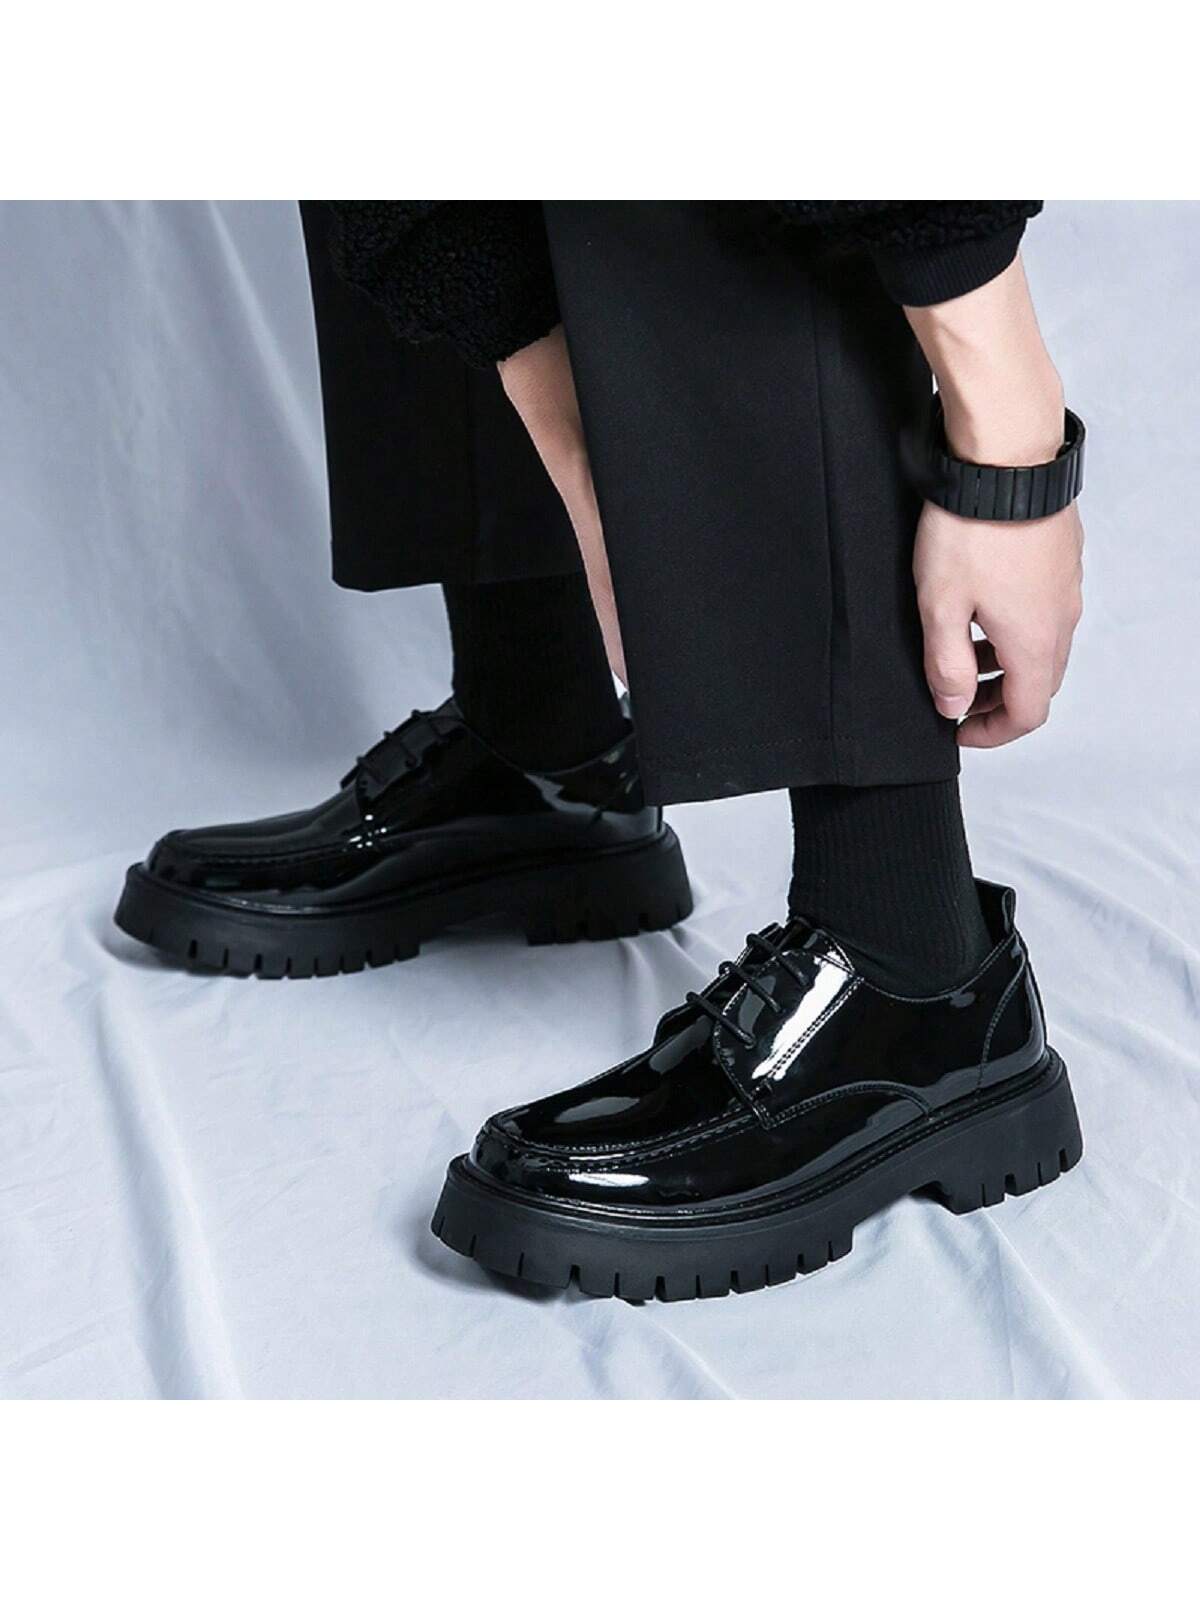 Мужские кожаные туфли на высоком каблуке с толстой подошвой, черный мужские коричневые классические туфли деловые кожаные туфли лидер продаж рабочая обувь модные роскошные повседневные туфли мужские туф